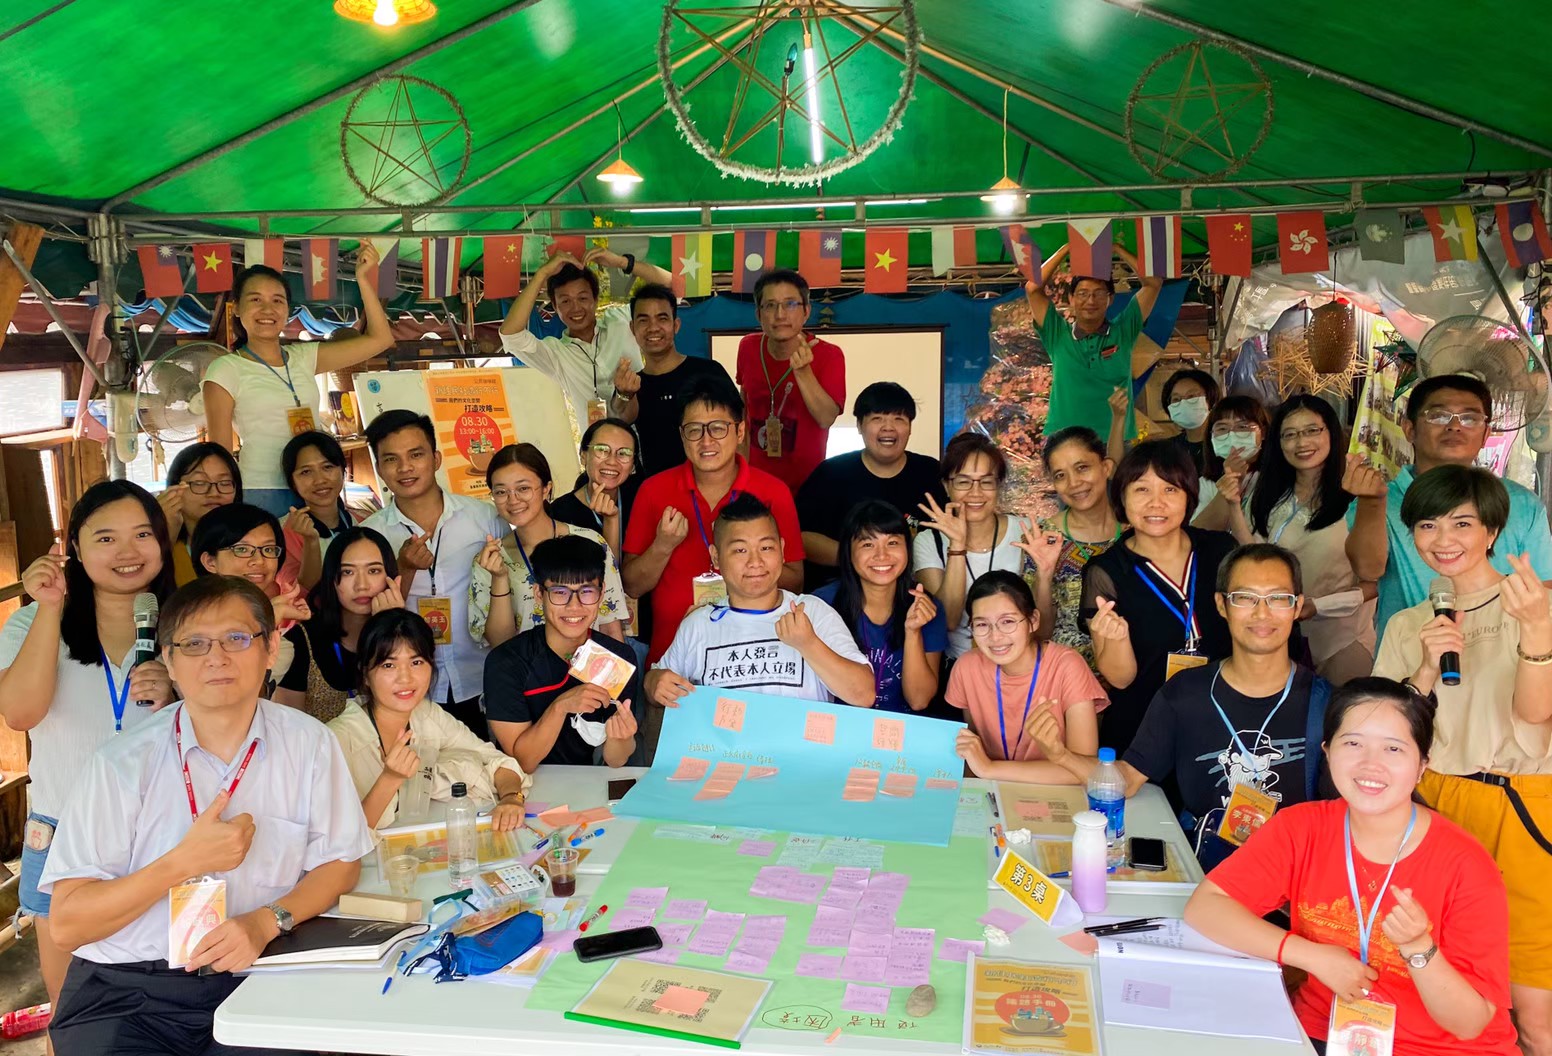 Chen Jun-yu memimpin anak-anak warga penduduk baru Vietnam untuk mengenal kampung halaman mereka. Sumber: Chen Jun-yu